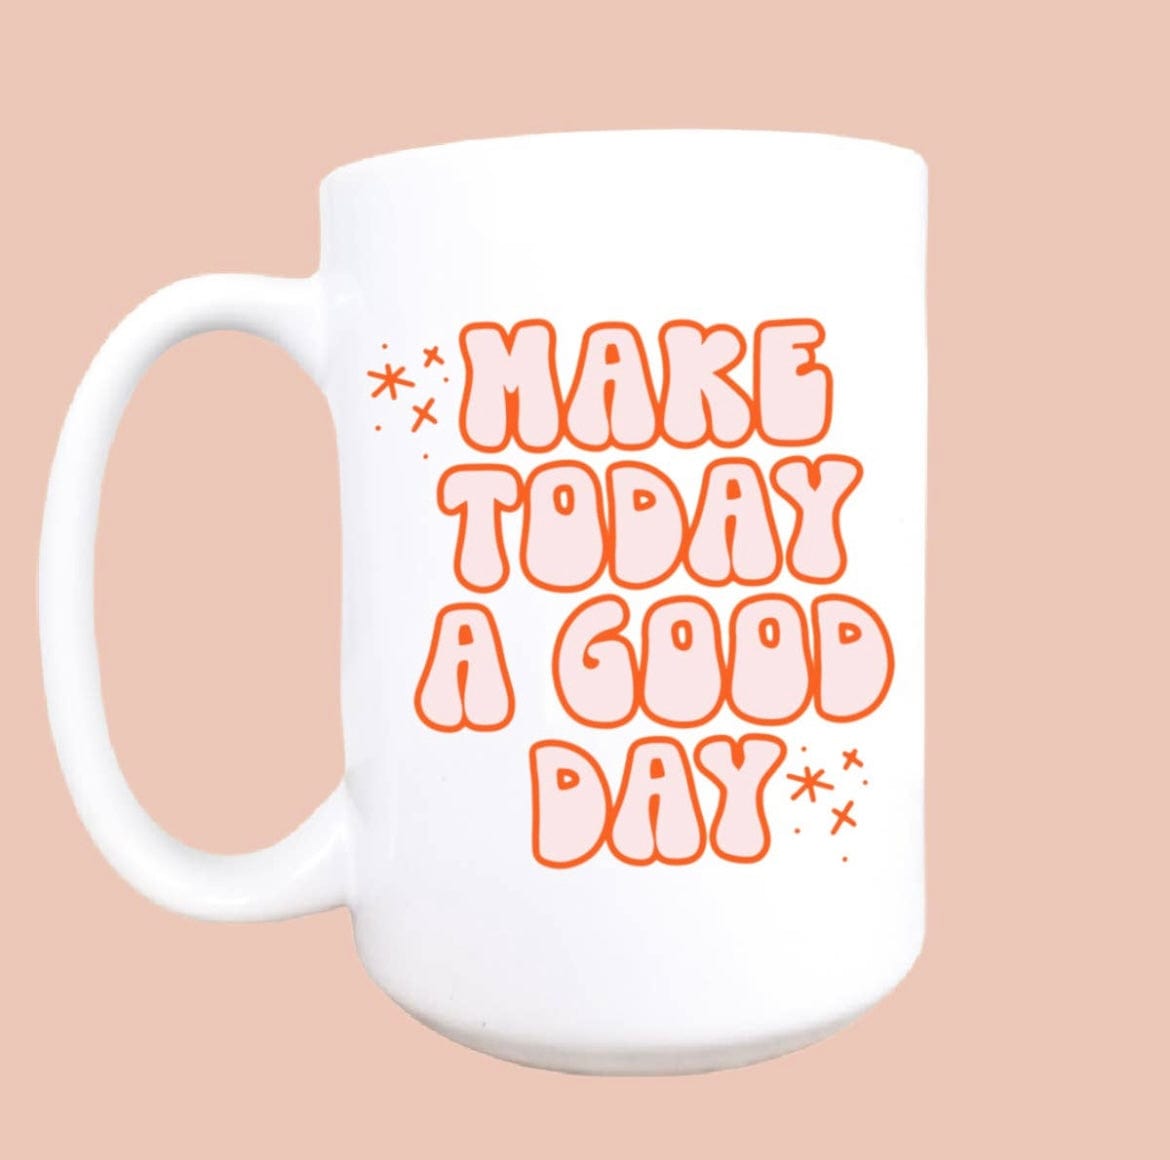 Make Today a Good Day Mug